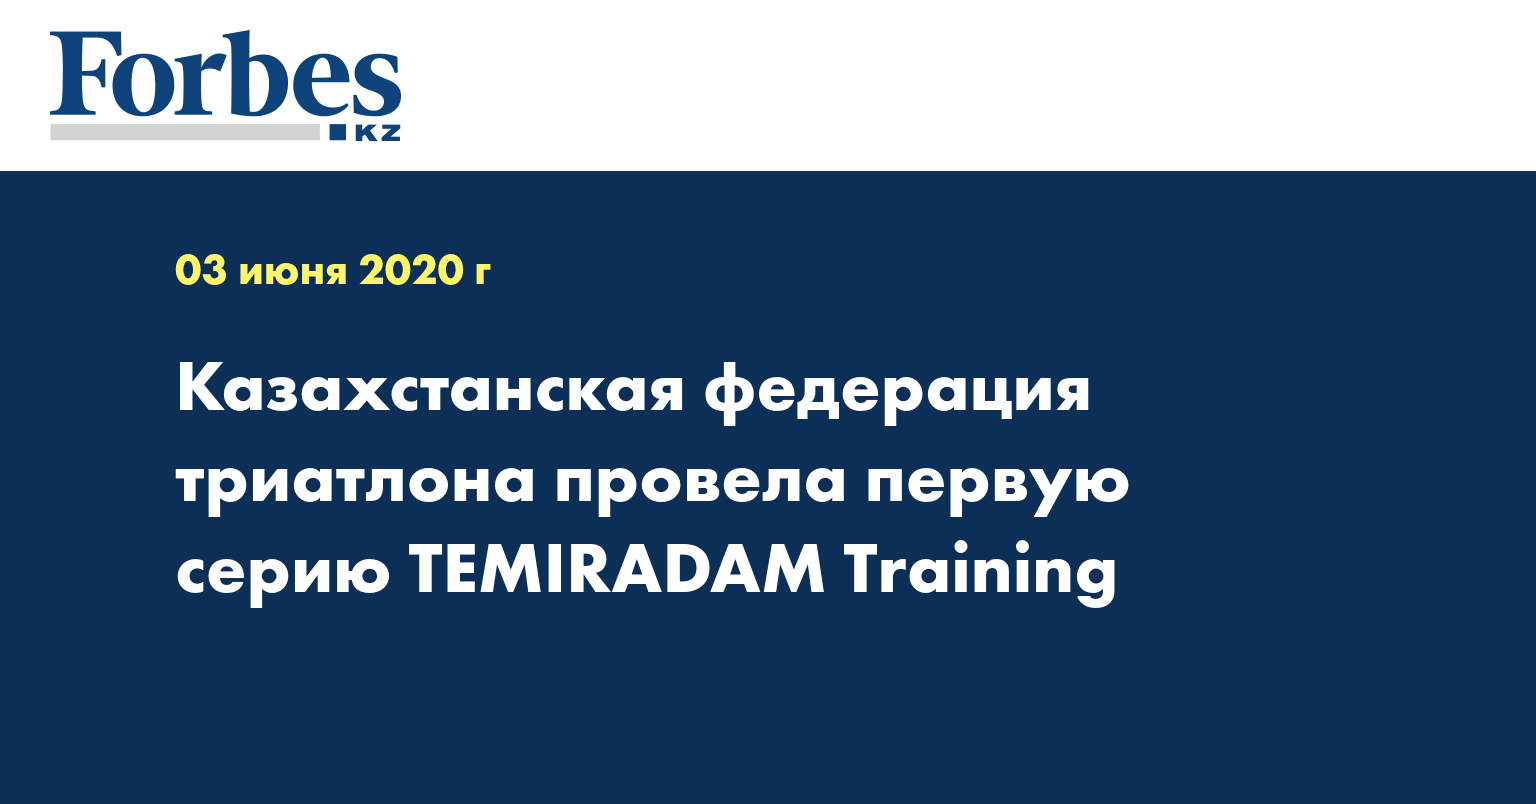 Казахстанская федерация триатлона провела первую серию TEMIRADAM Training